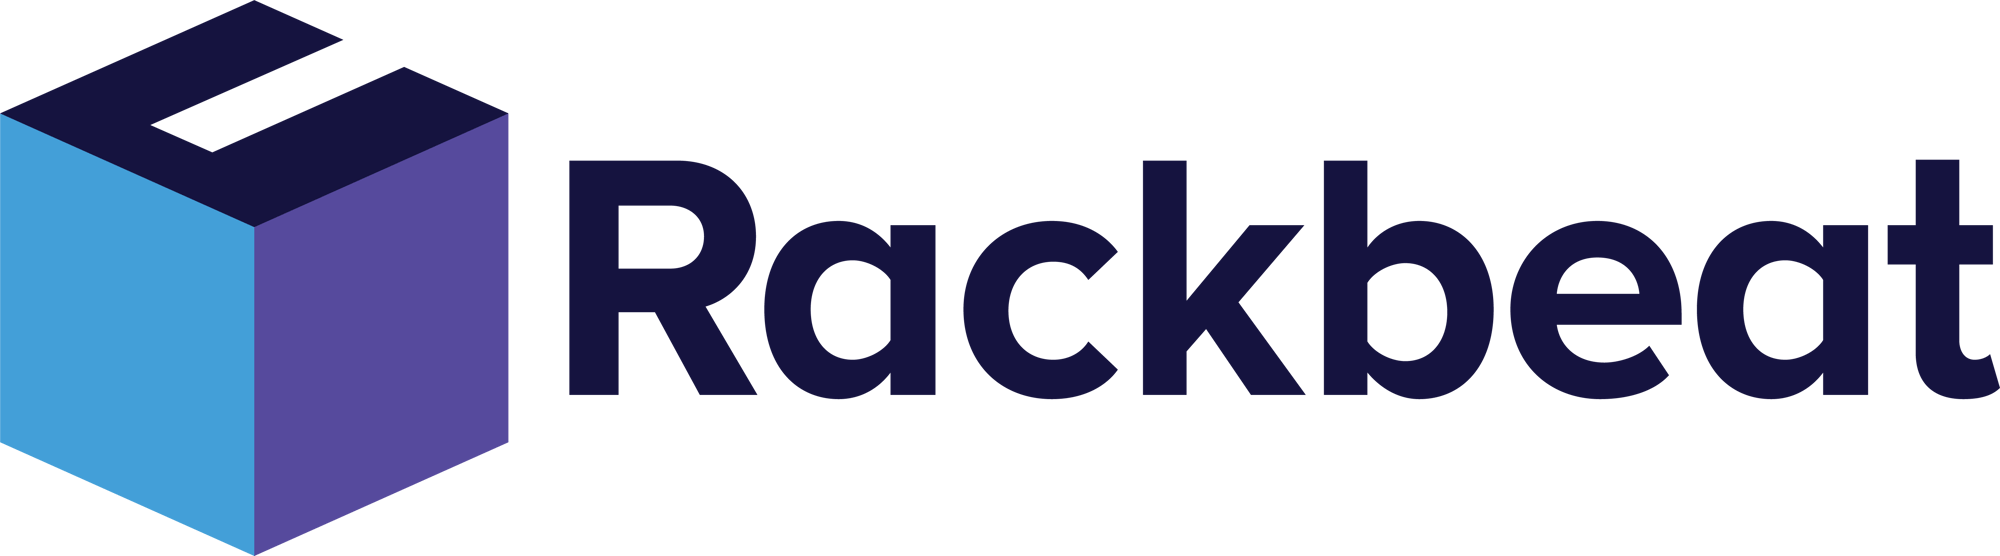 Rackbeat logo